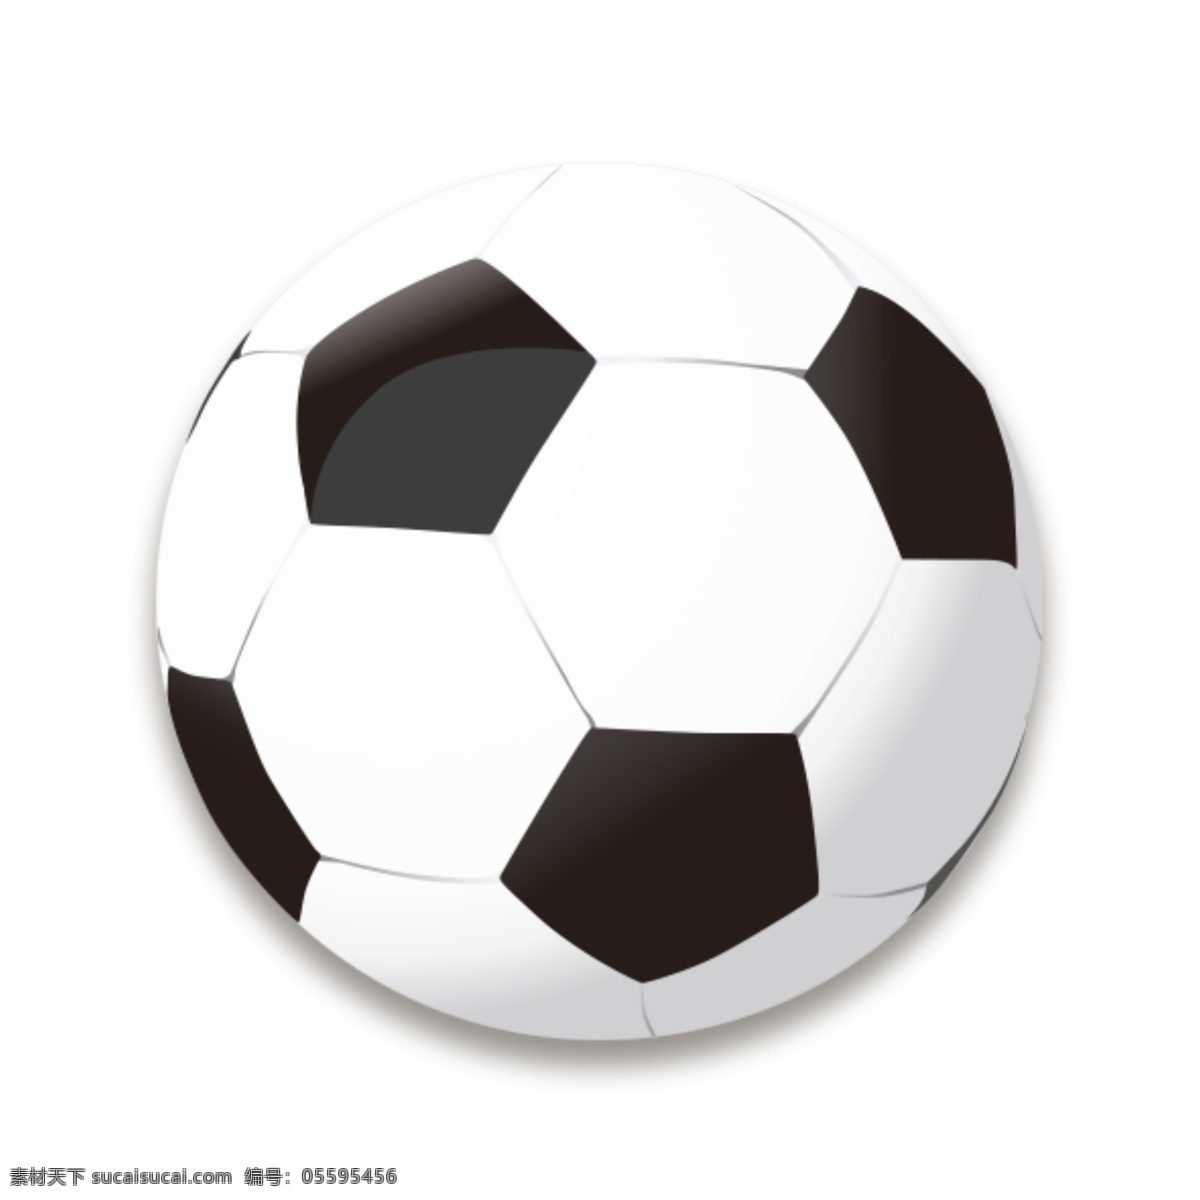 打足球 足球素材 矢量足球 矢量足球素材 卡通足球 卡通足球素材 足球比赛 足球运动 球类素材 球类运动 体育用品 体育竞技 体育器材 文体用品